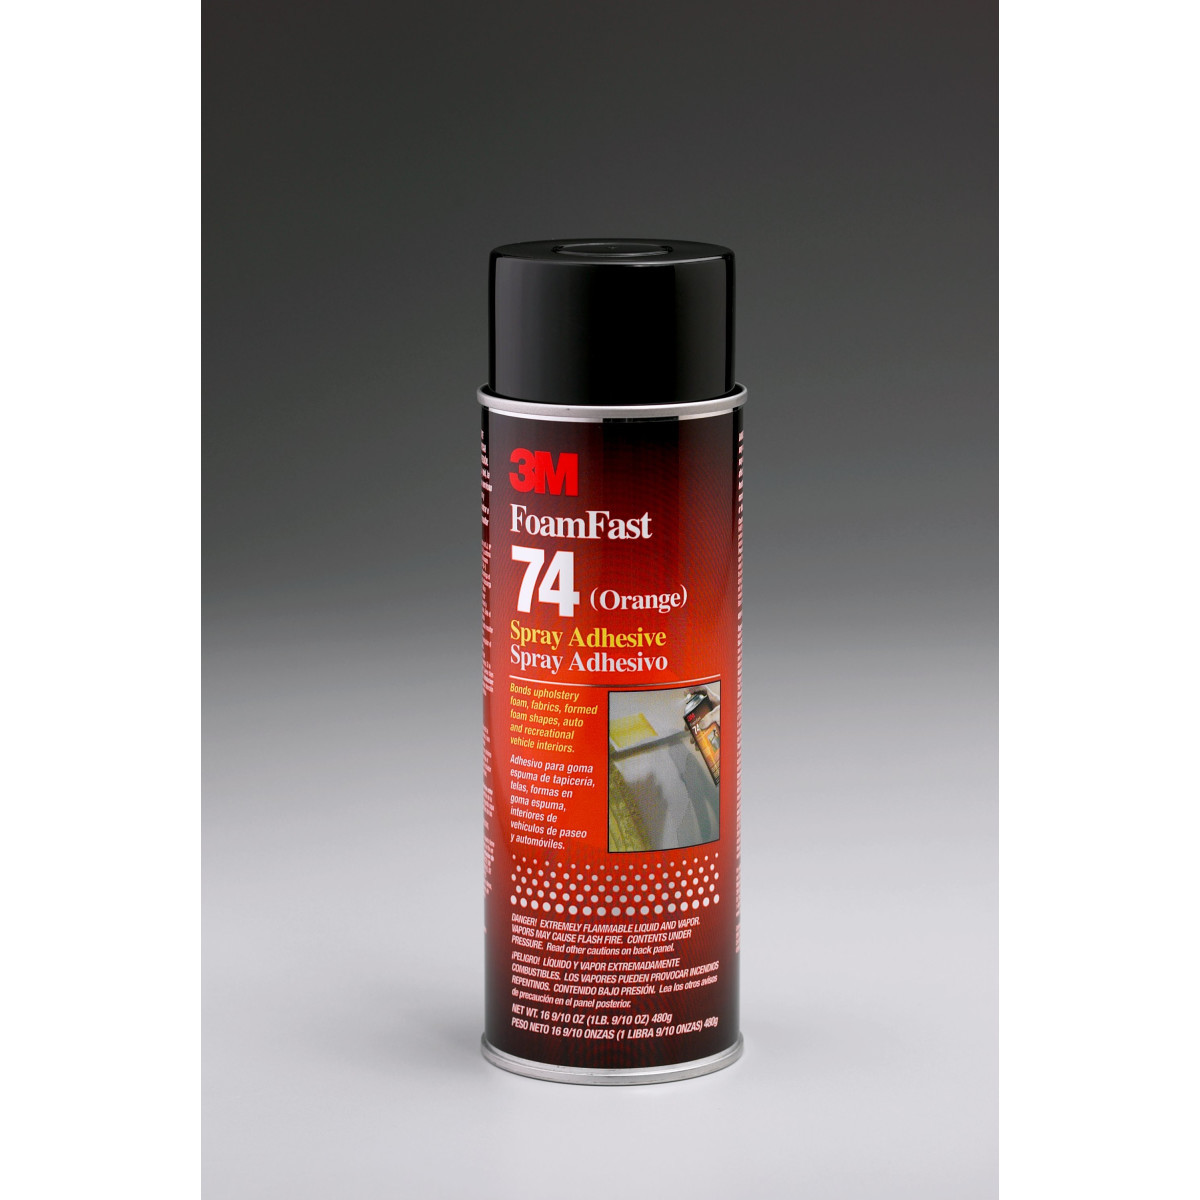 3M Super 77 16.7-oz Spray Adhesive at